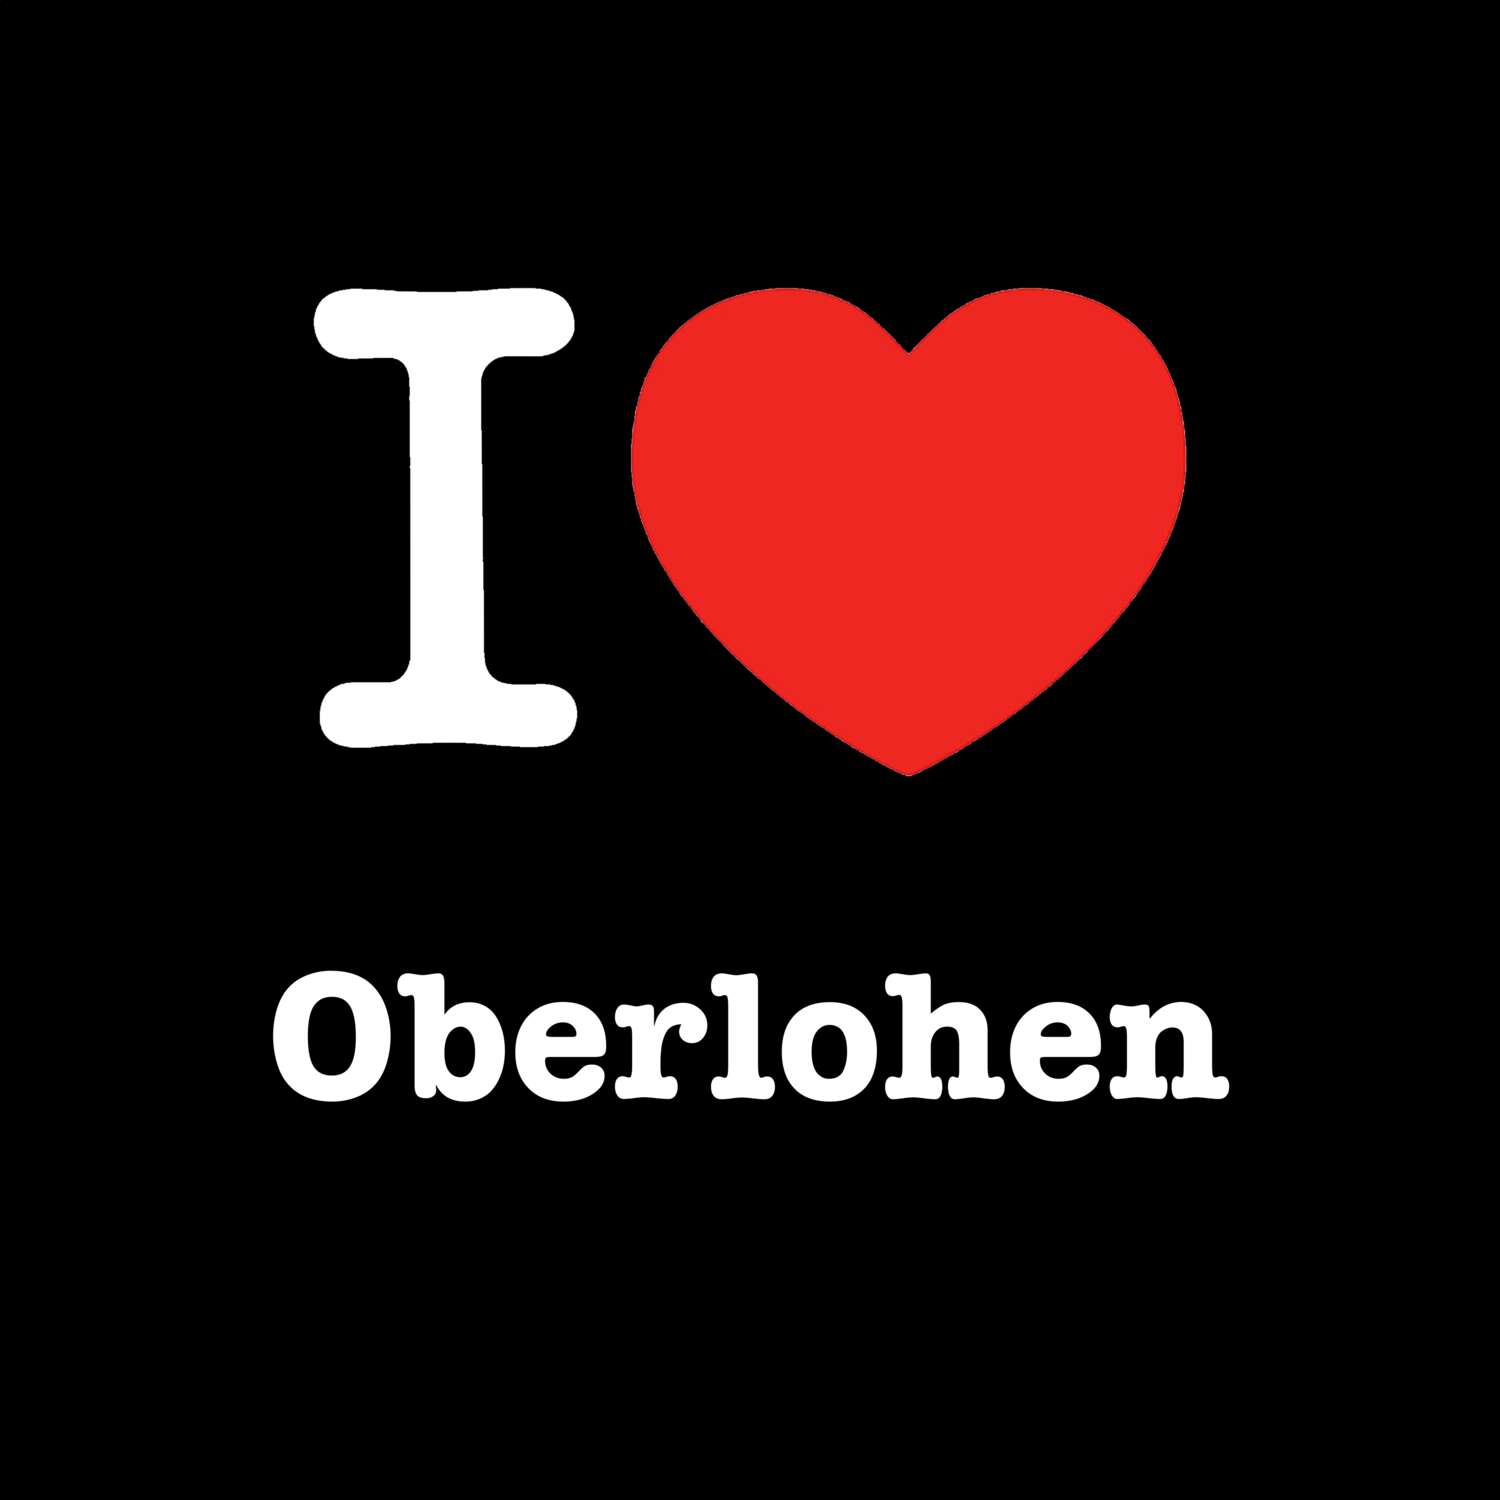 Oberlohen T-Shirt »I love«